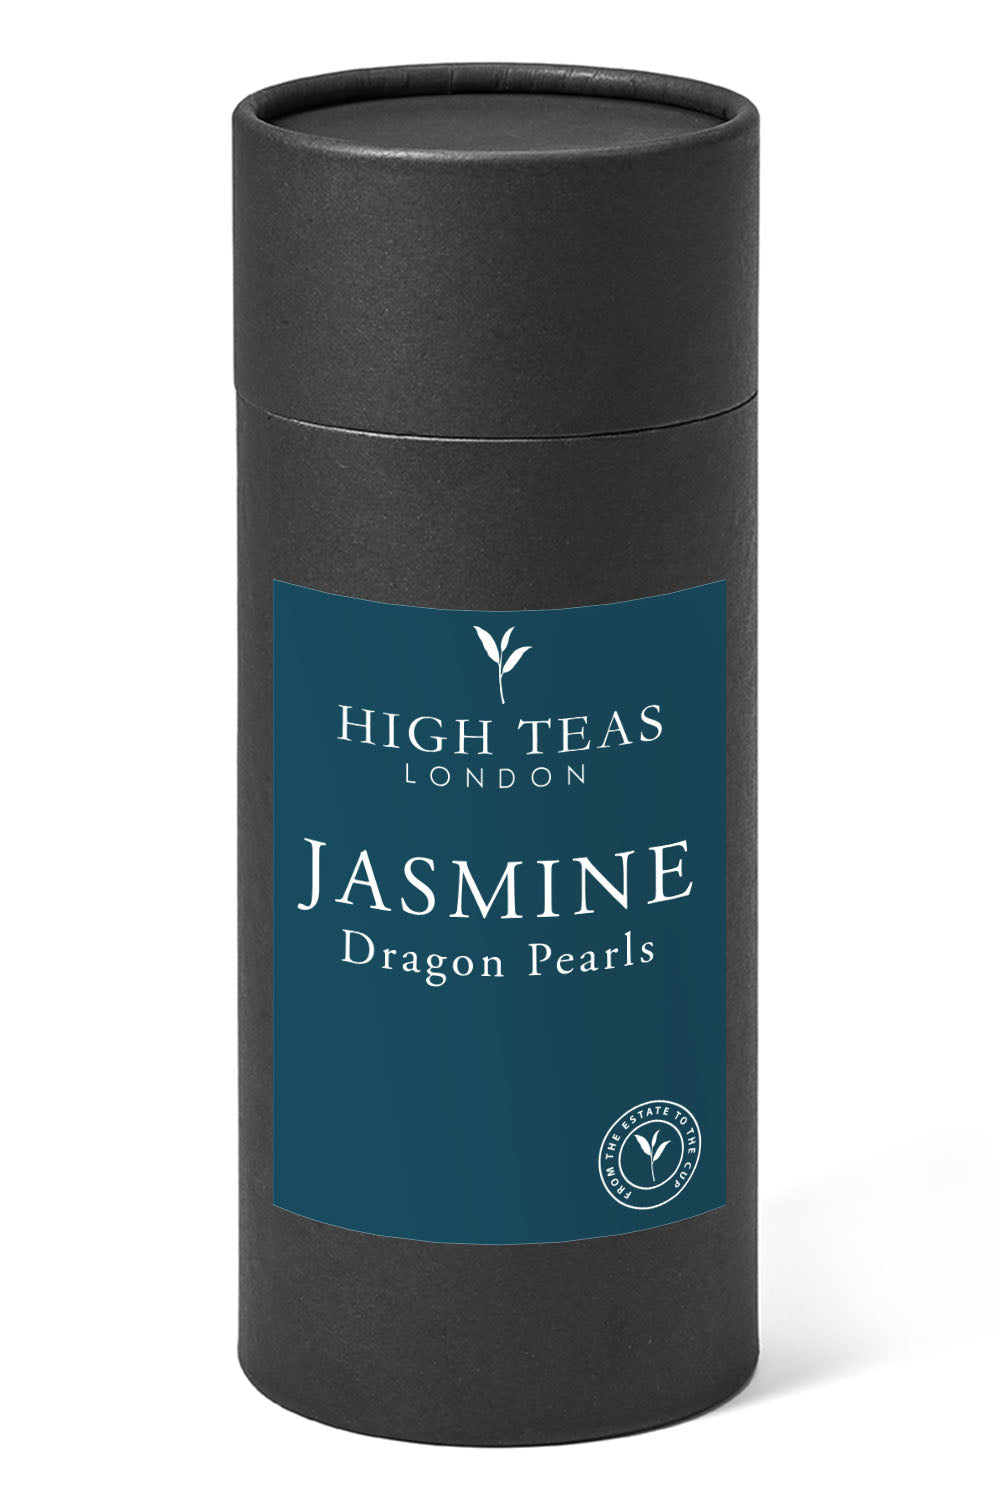 Jasmine Dragon Pearls-150g gift-Loose Leaf Tea-High Teas